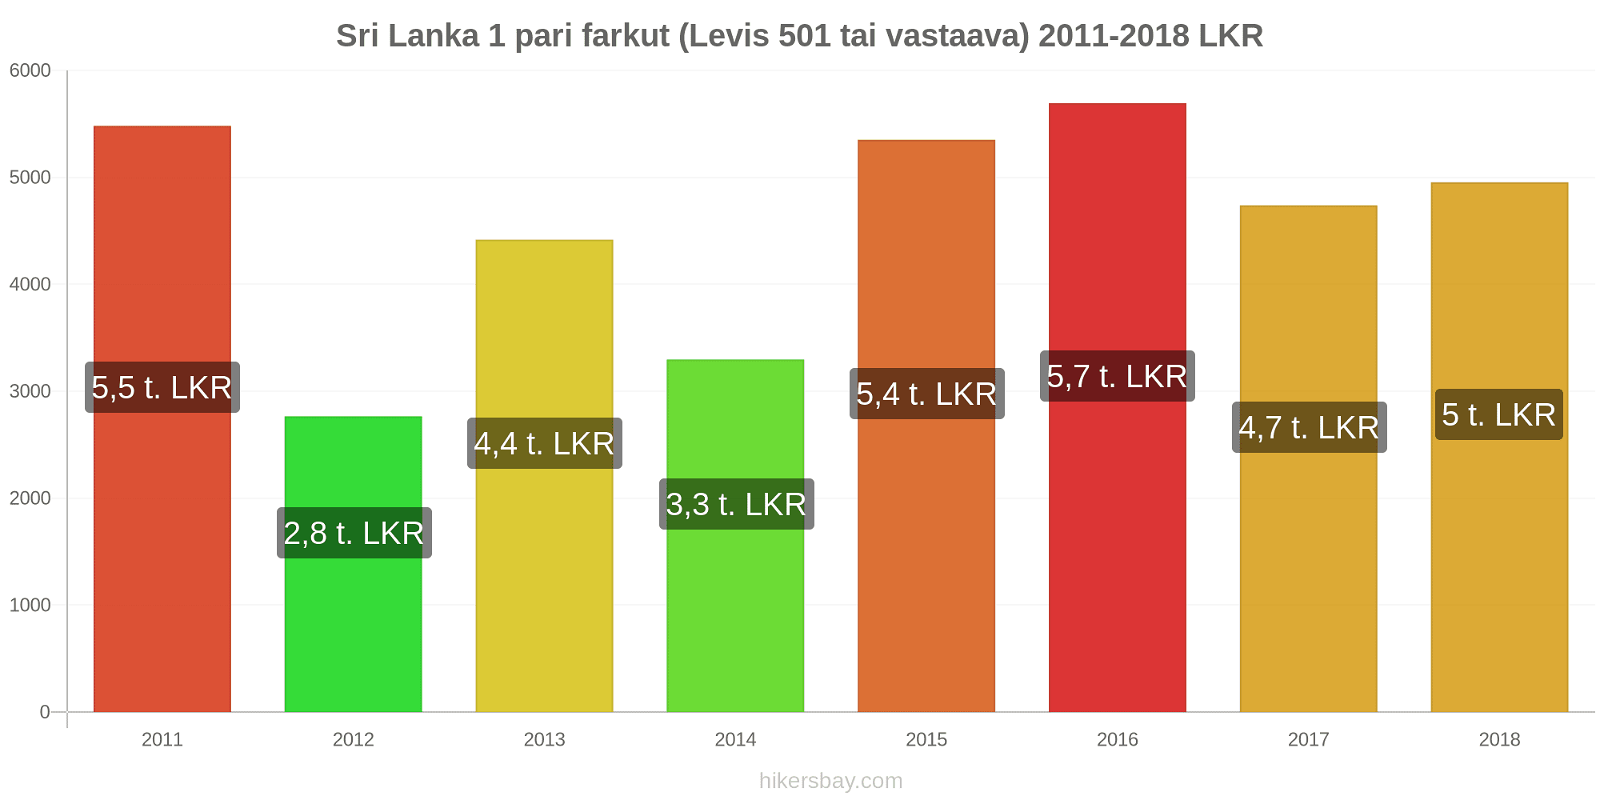 Sri Lanka hintojen muutokset 1 pari farkut (Levis 501 tai vastaava) hikersbay.com